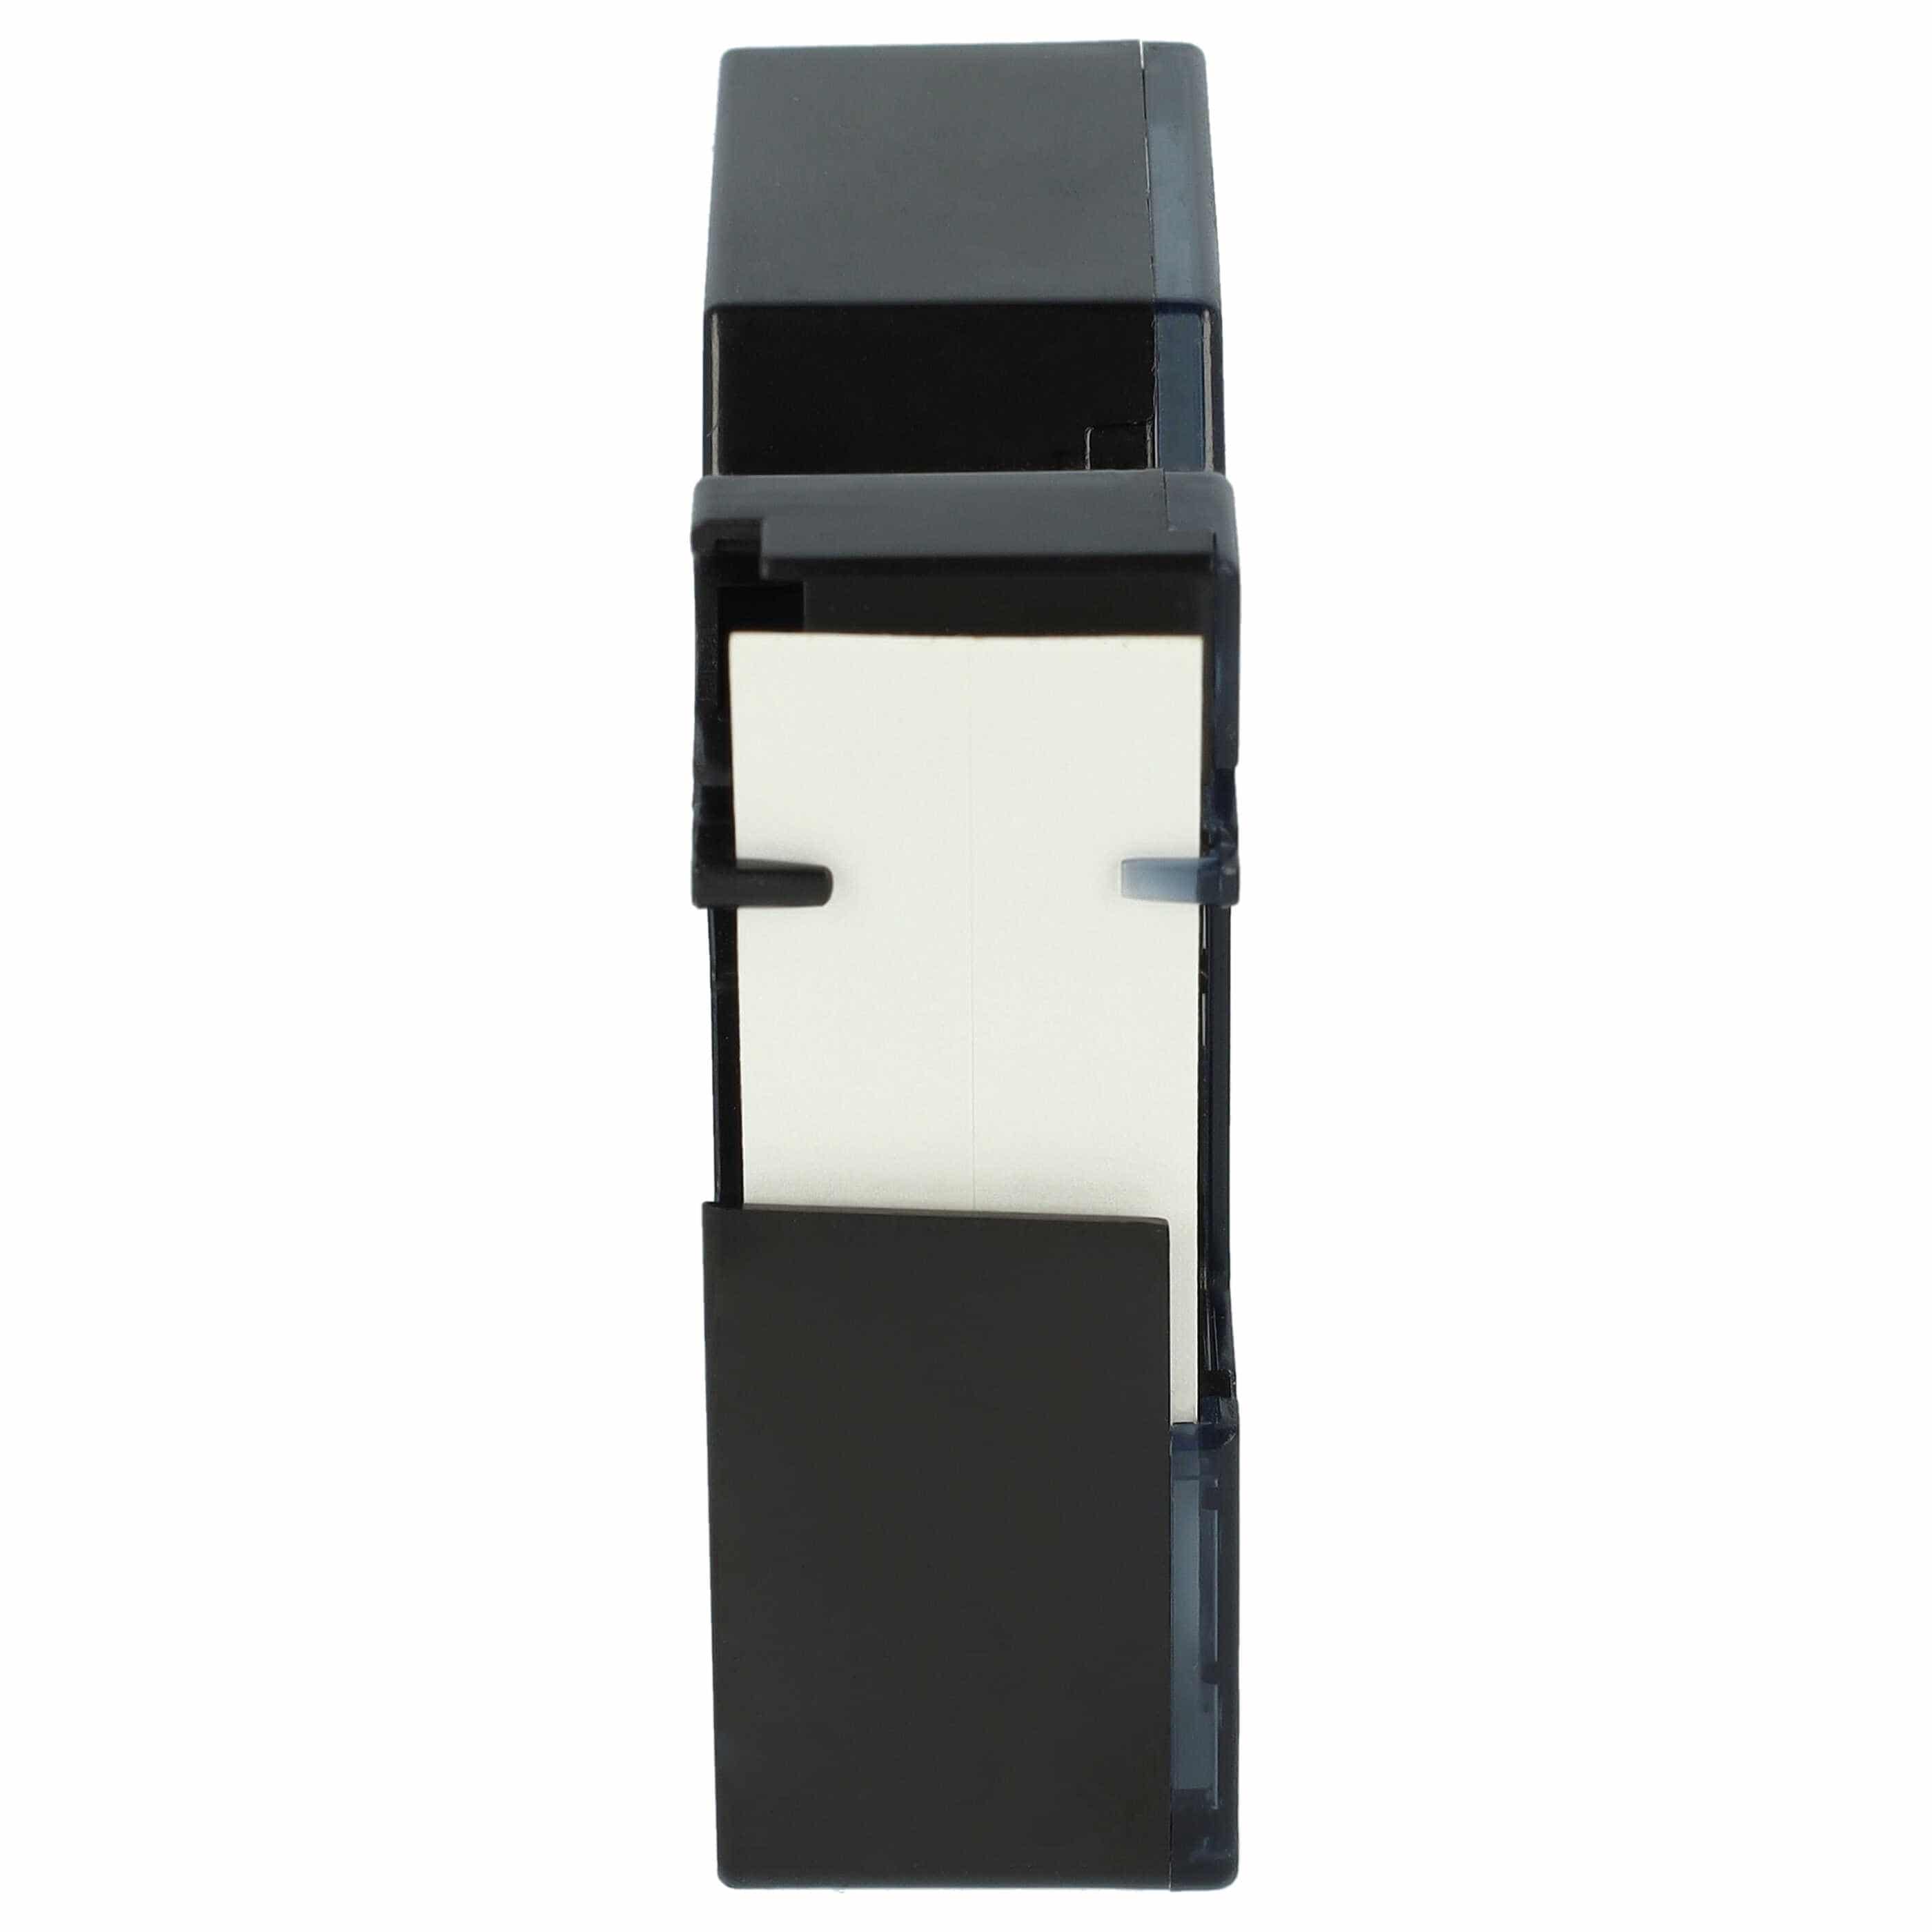 Cassette à ruban remplace Dymo 18484 - 19mm lettrage Noir ruban Blanc, polyester